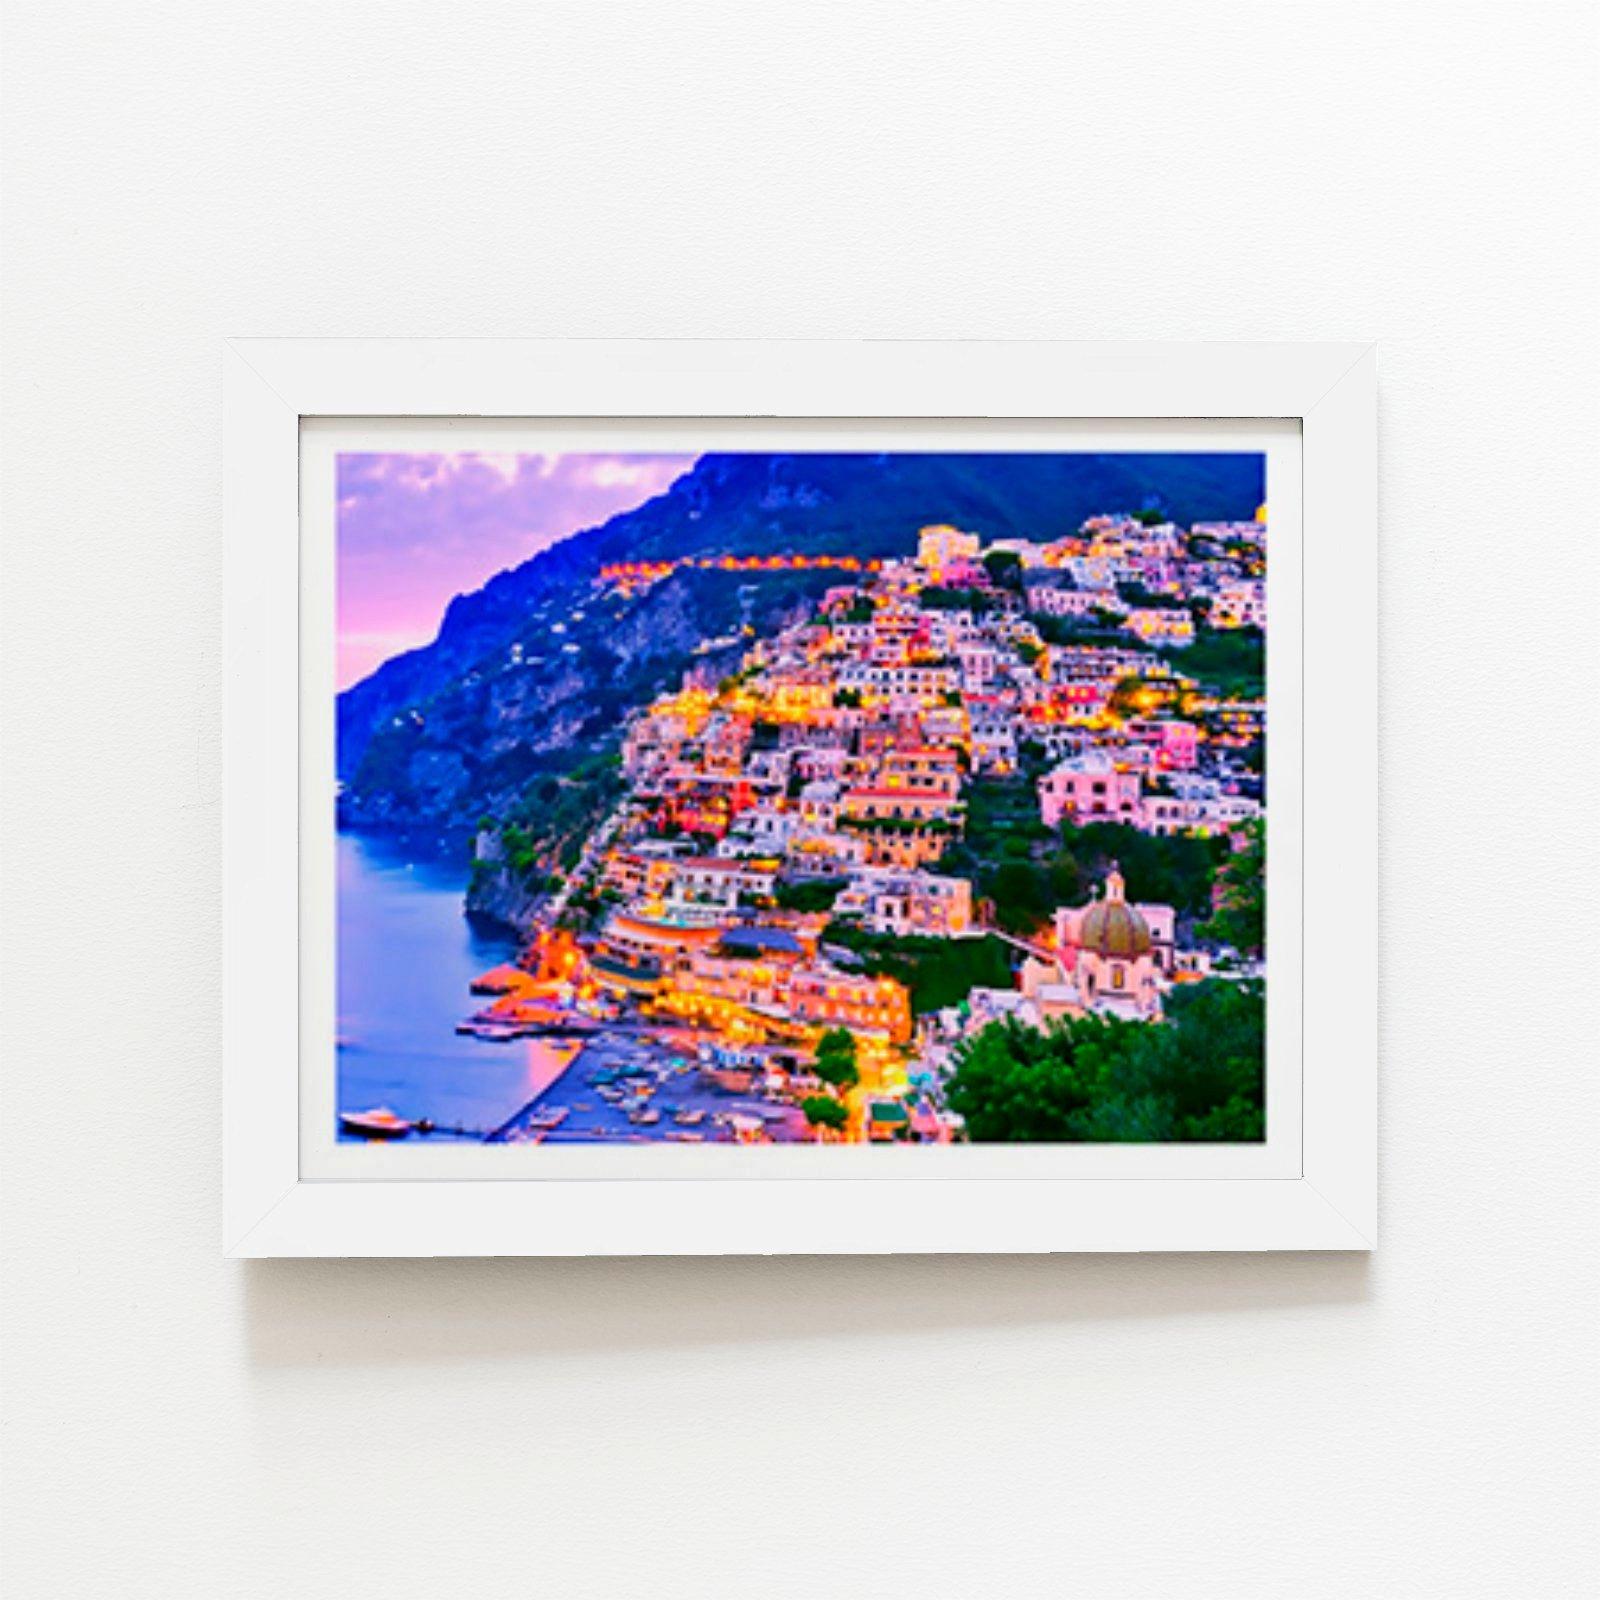 Postiano At Dusk, Amalfi Coast, Italy Framed Art Print